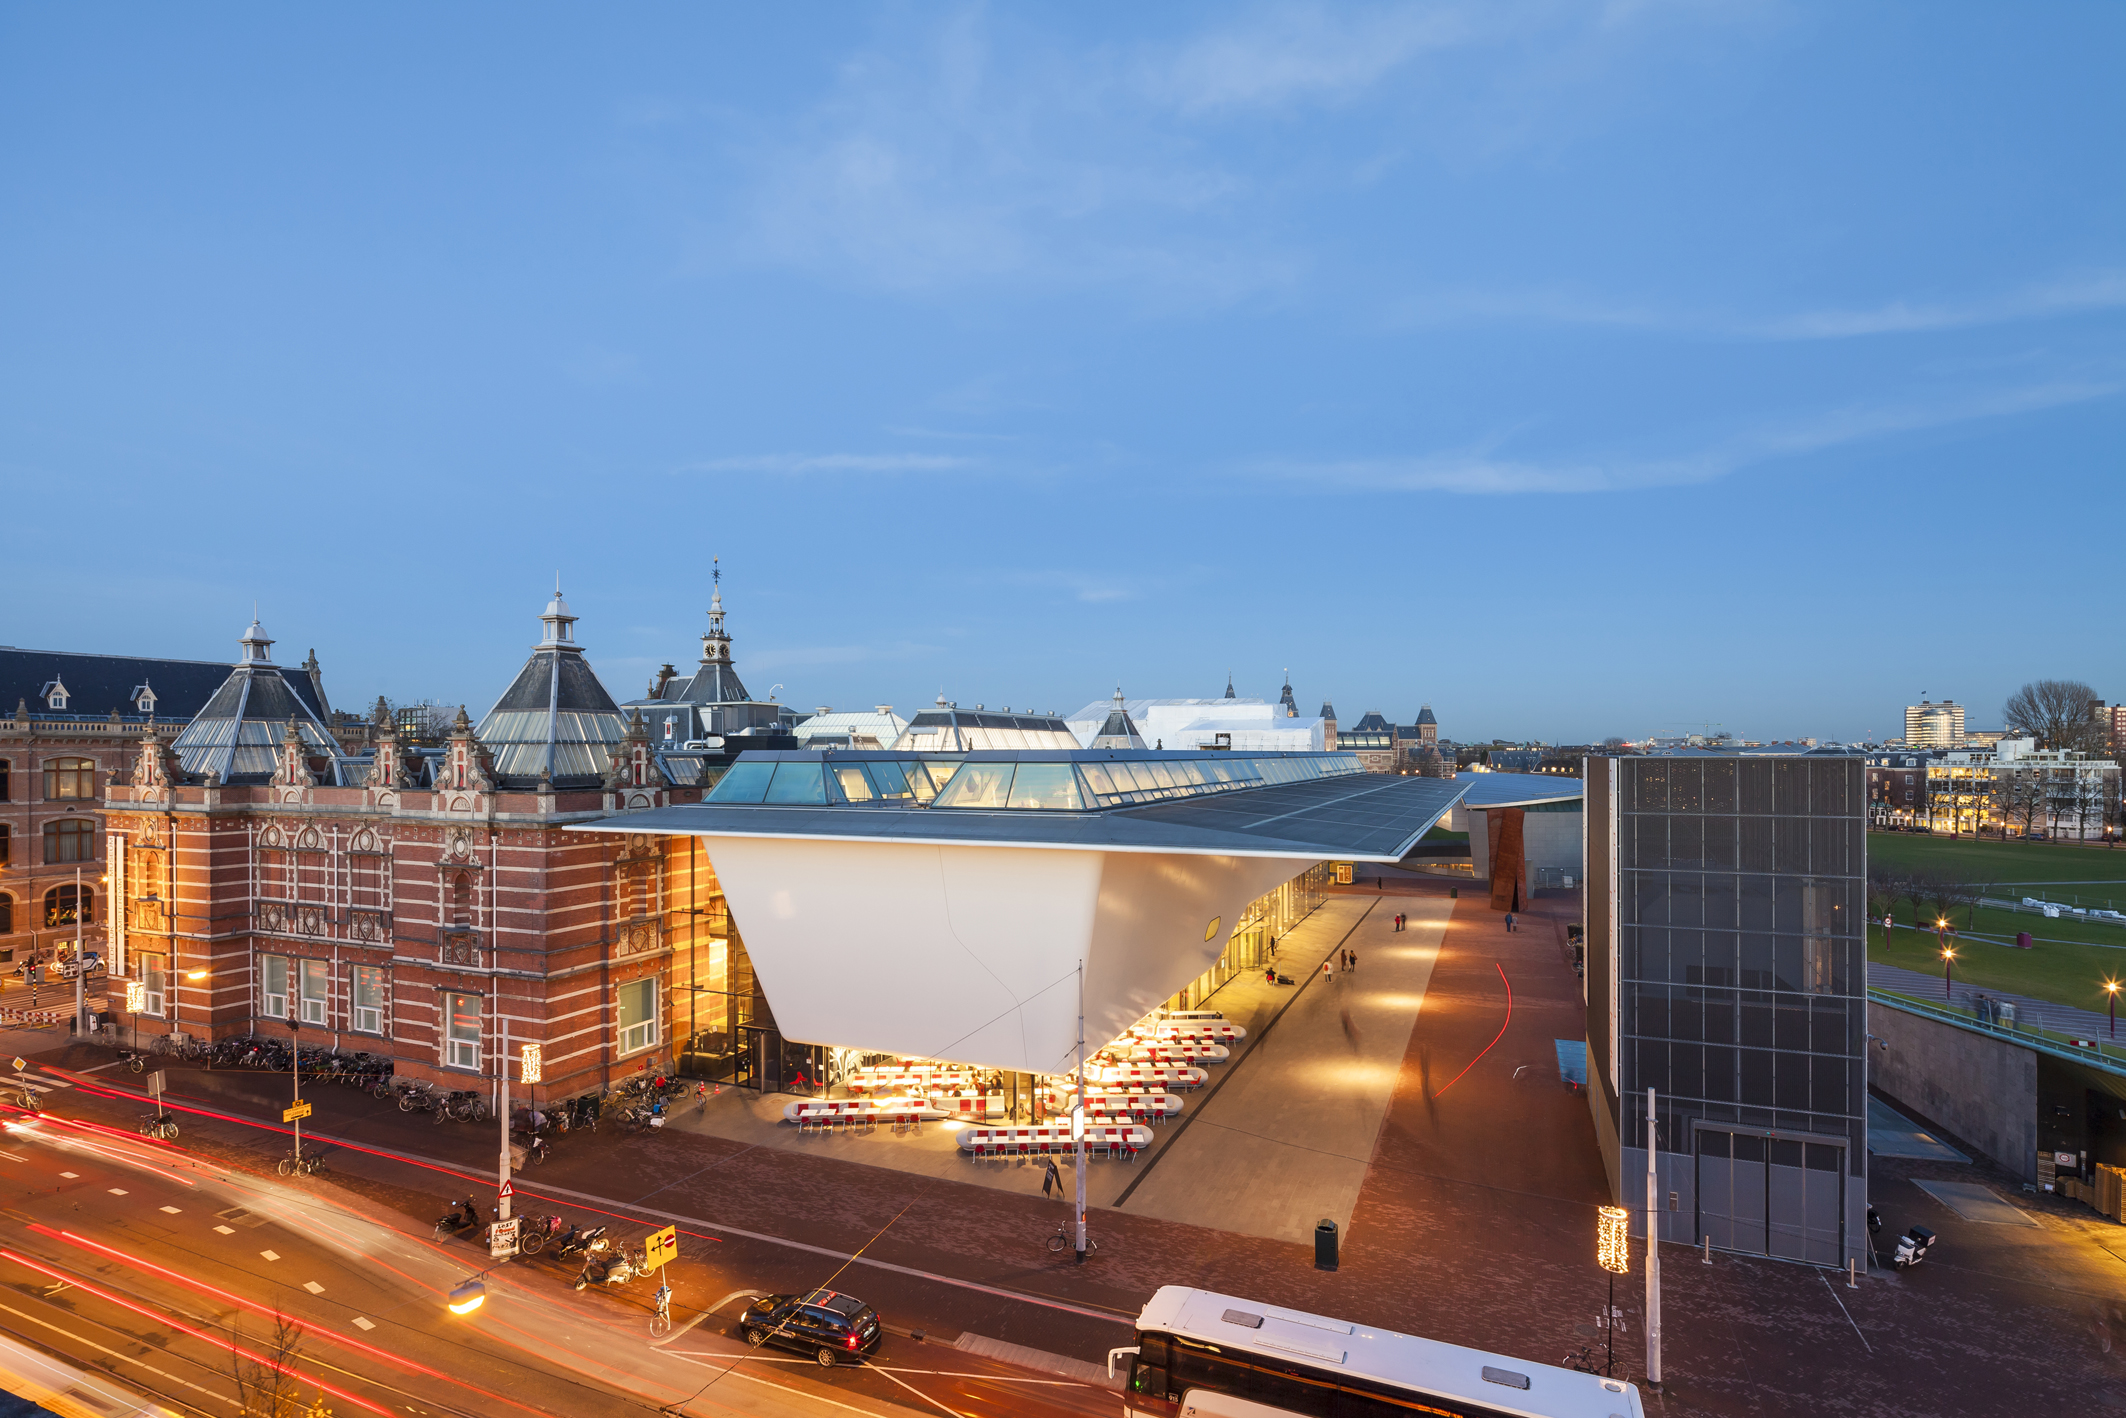 Новый городской музей. Музей Стеделейк Амстердам. Городской музей (Амстердам). Stedelijk Museum — Амстердам, Нидерланды. Музей современного искусства Амстердам.